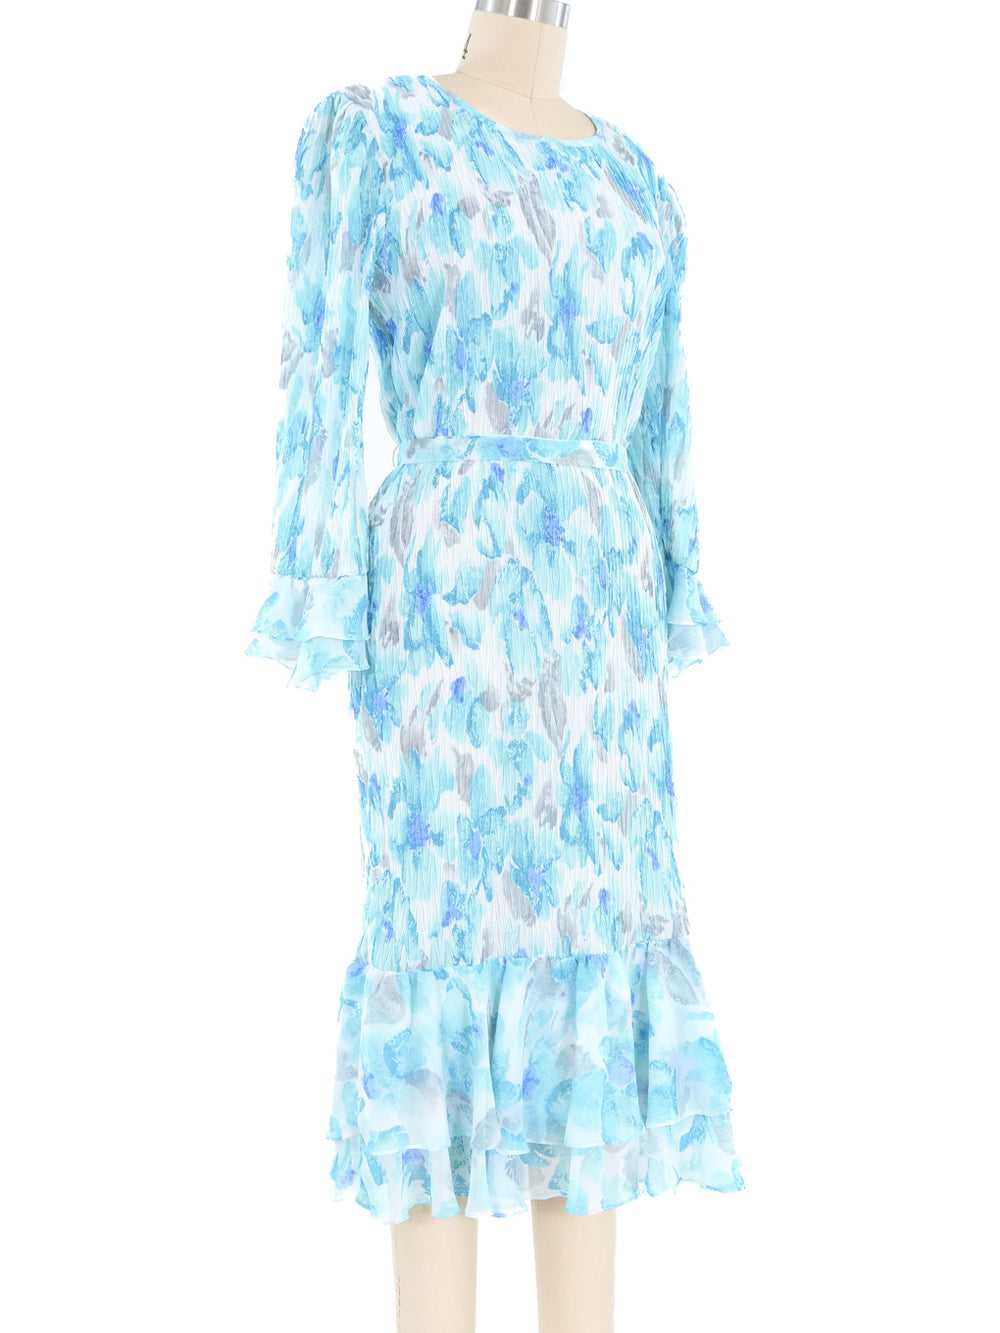 Turquoise Pleated Ruffle Dress - image 3